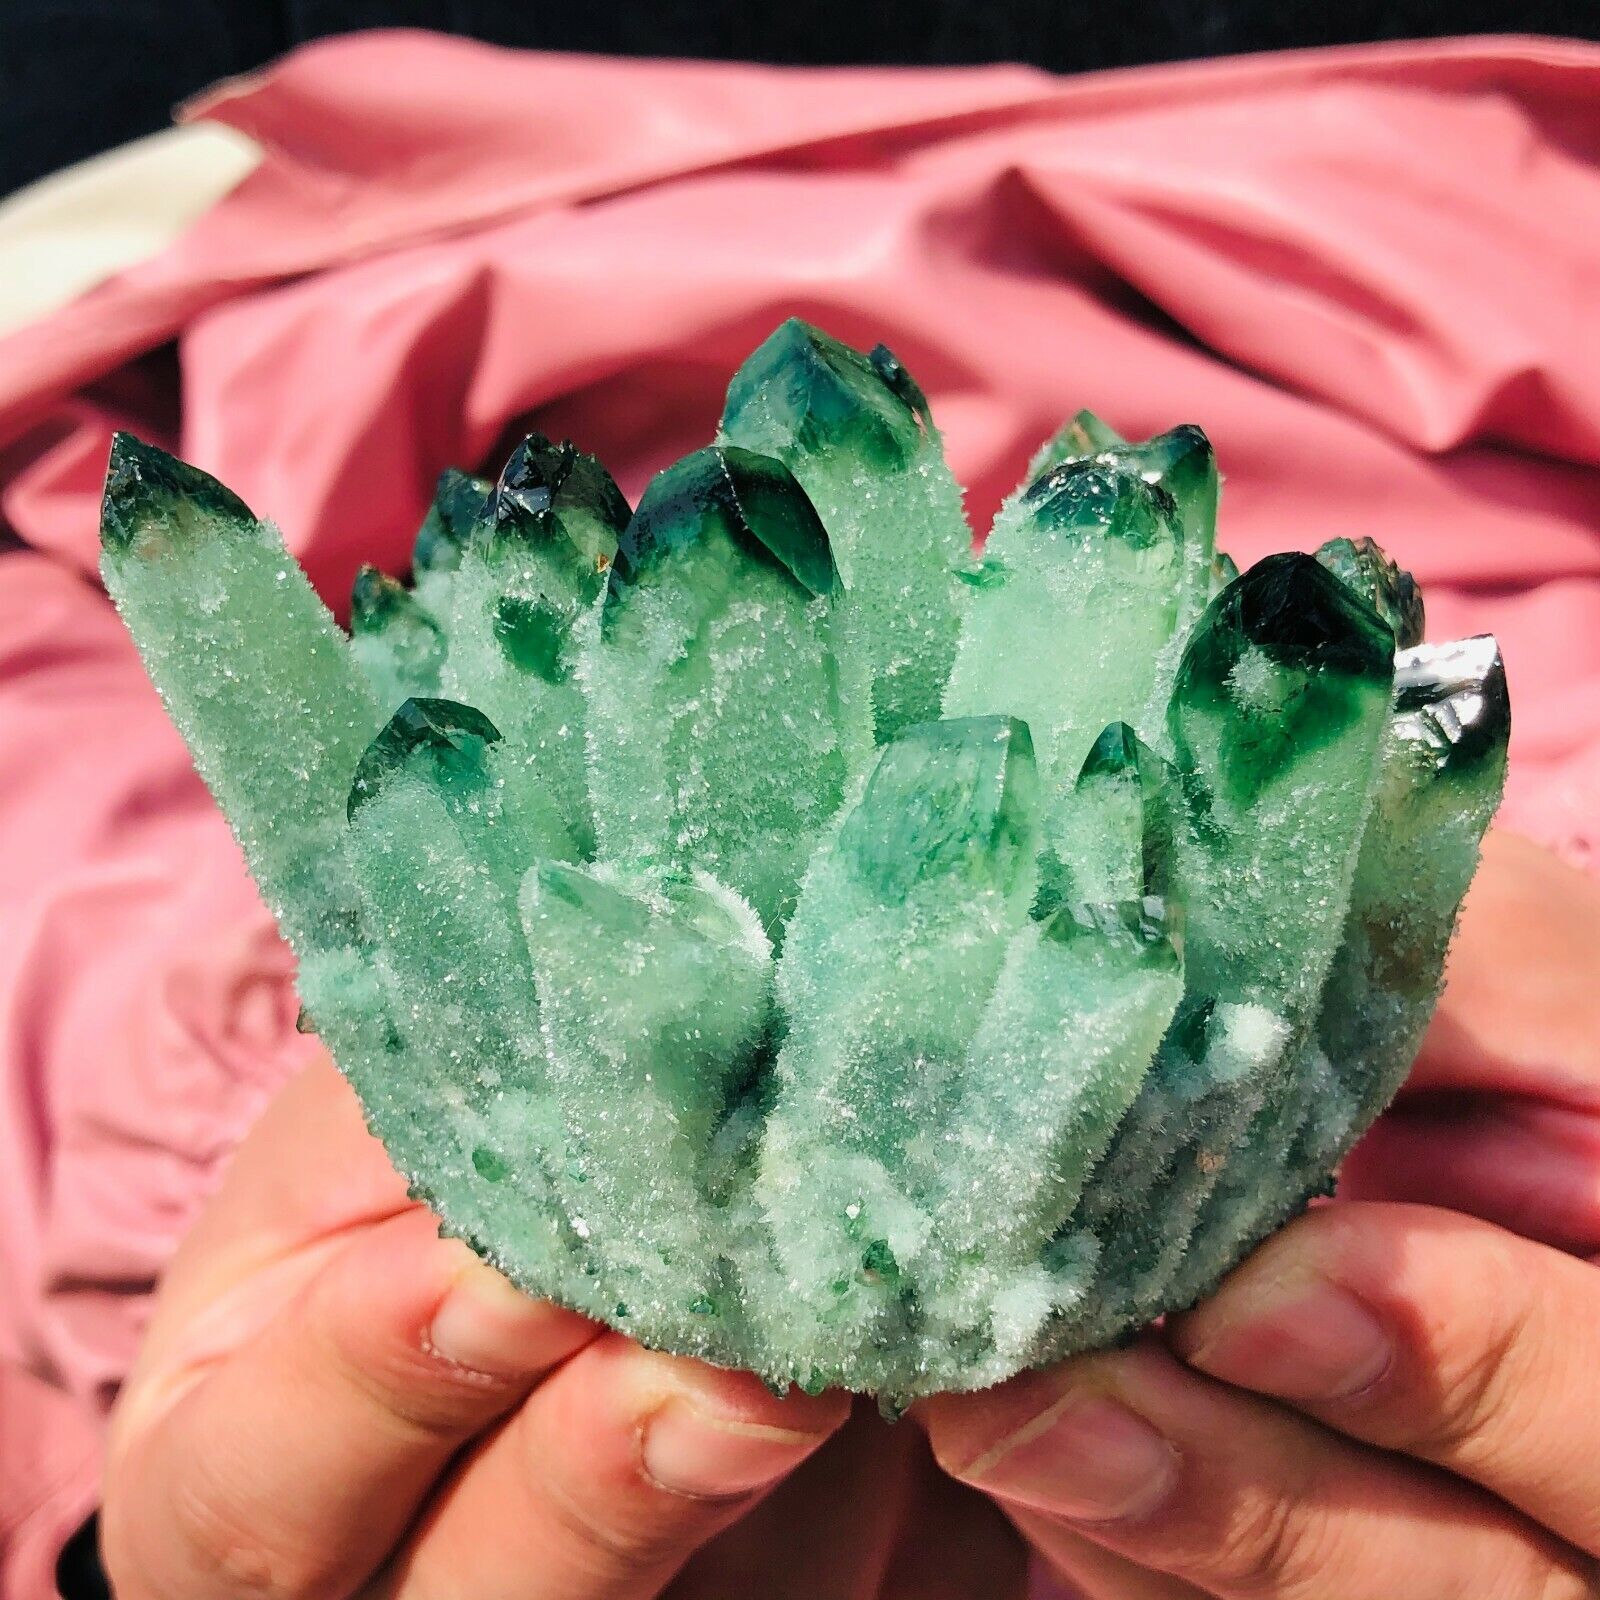  300-400g Rare New Twinkling Green Phantom Quartz Crystal Cluster Specimens 